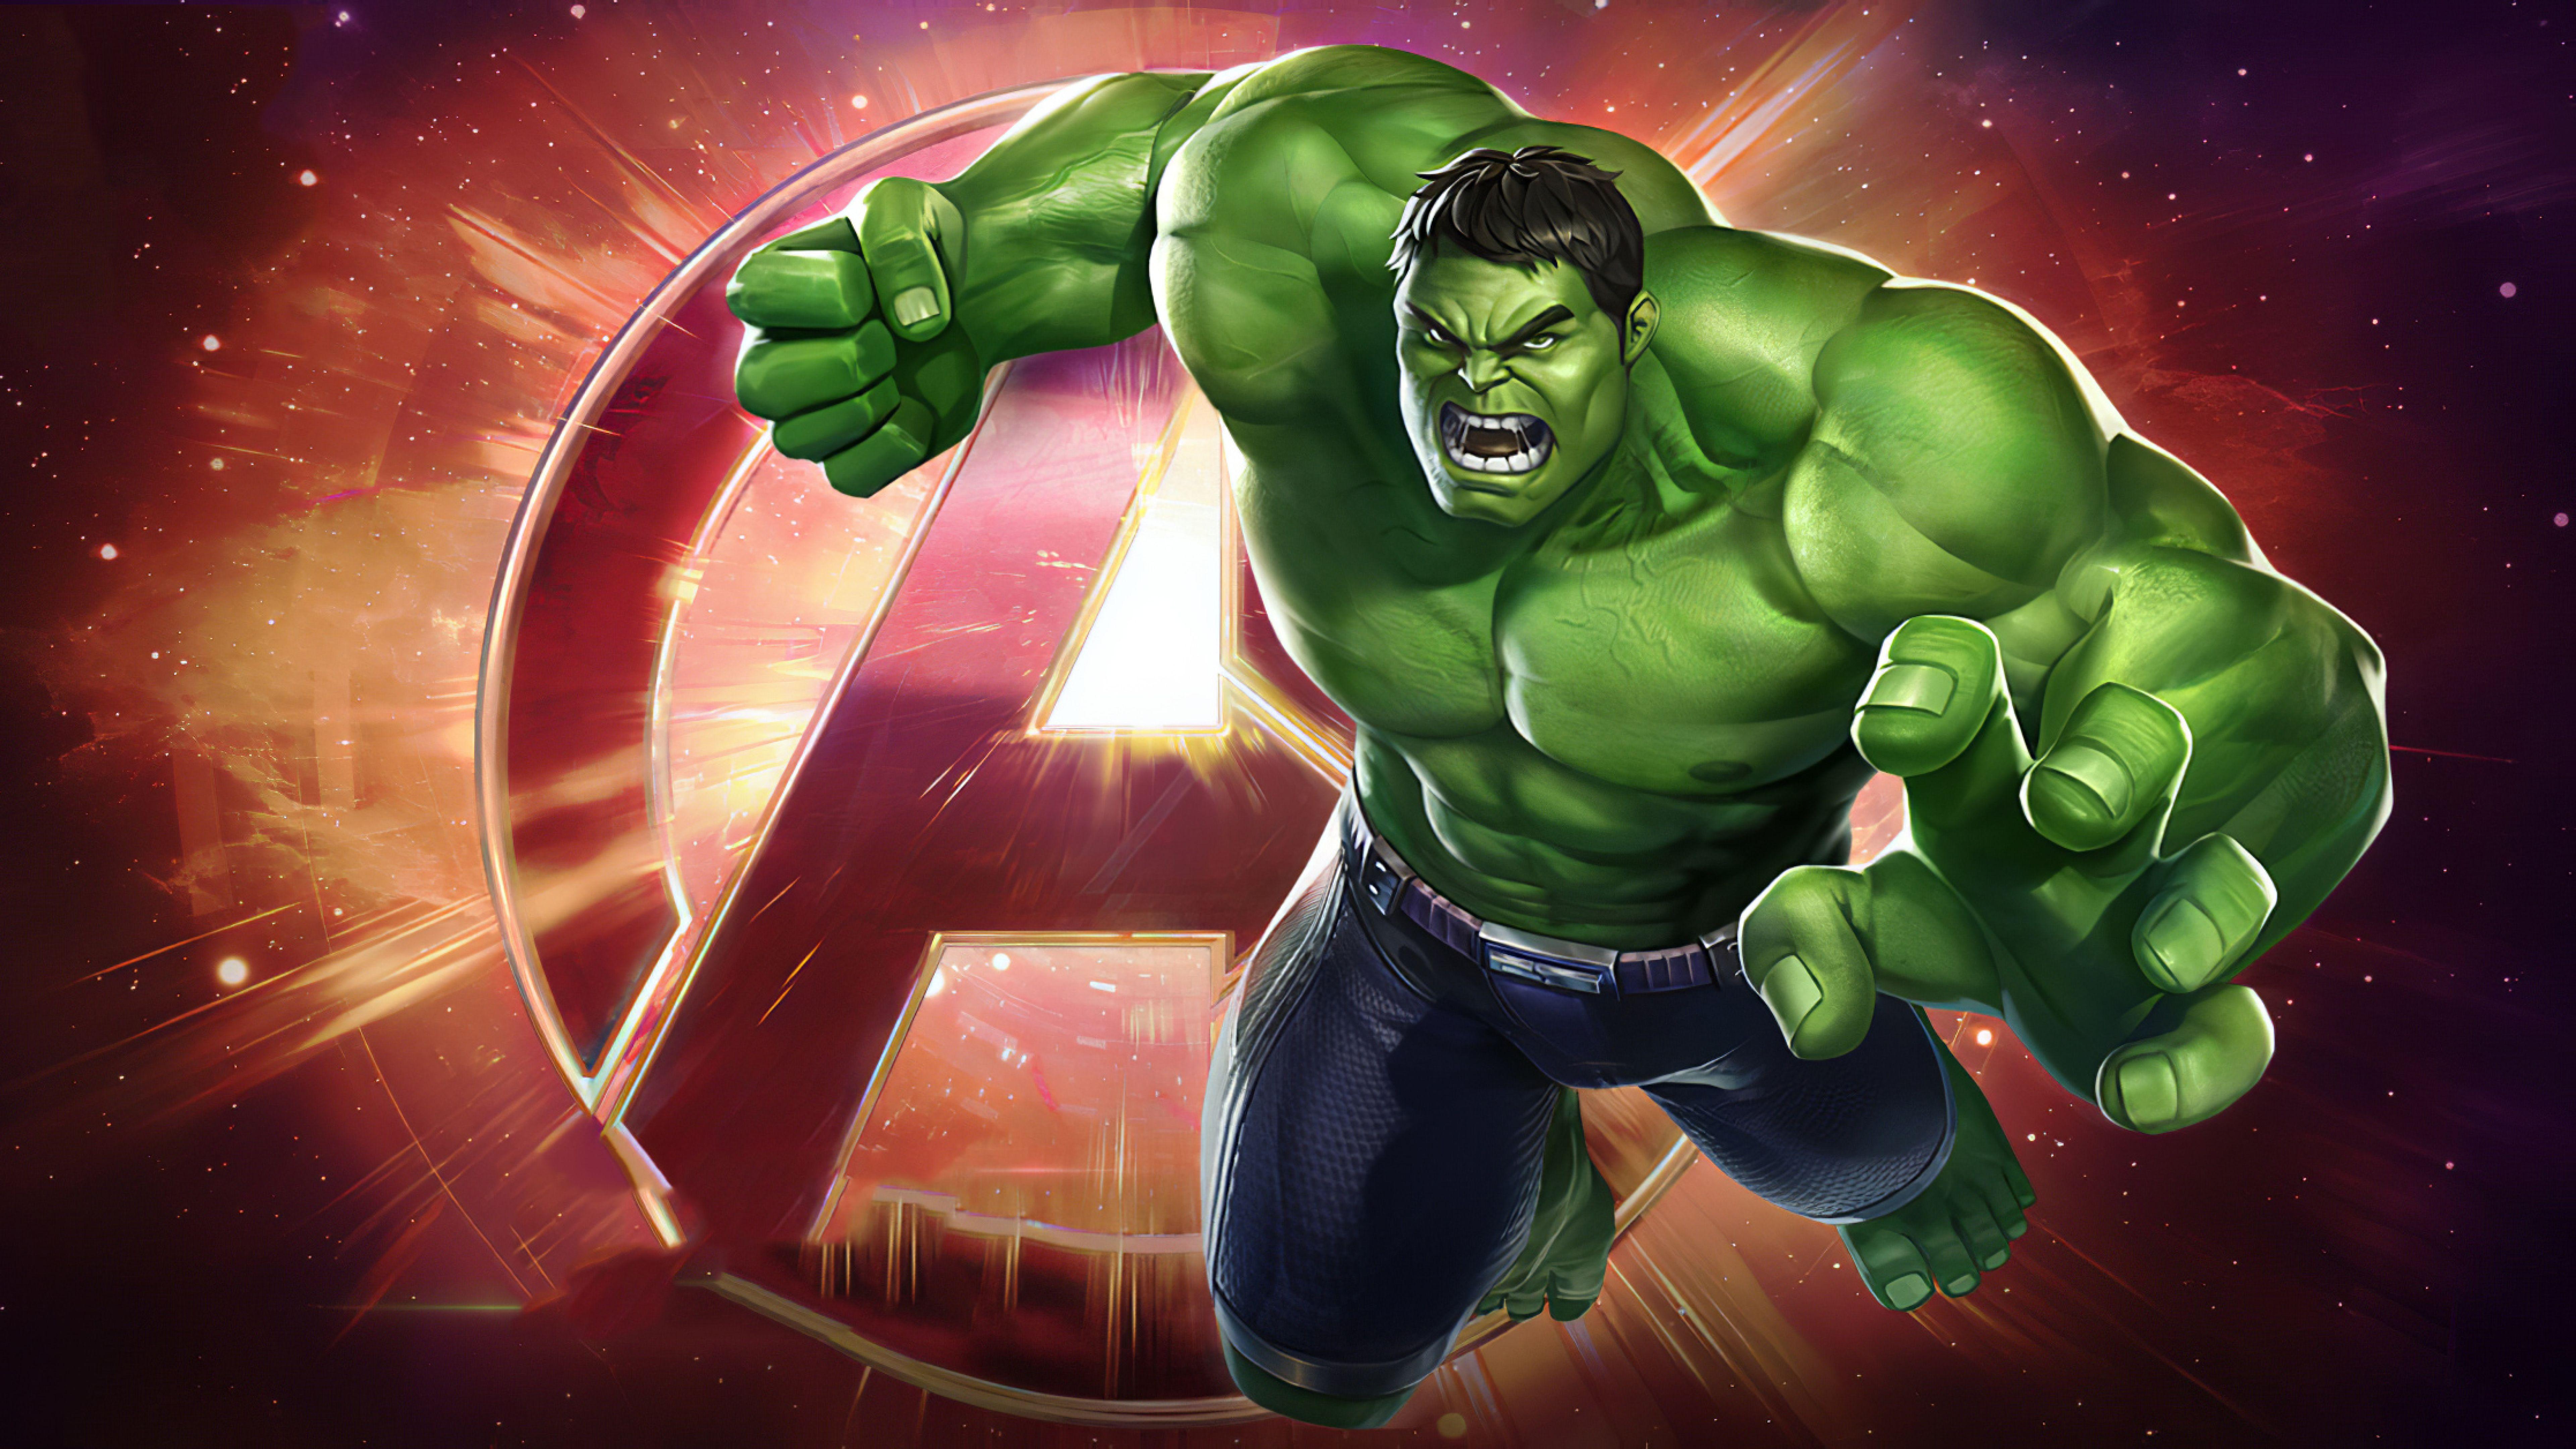 Hulk 8K Wallpapers - Top Free Hulk 8K